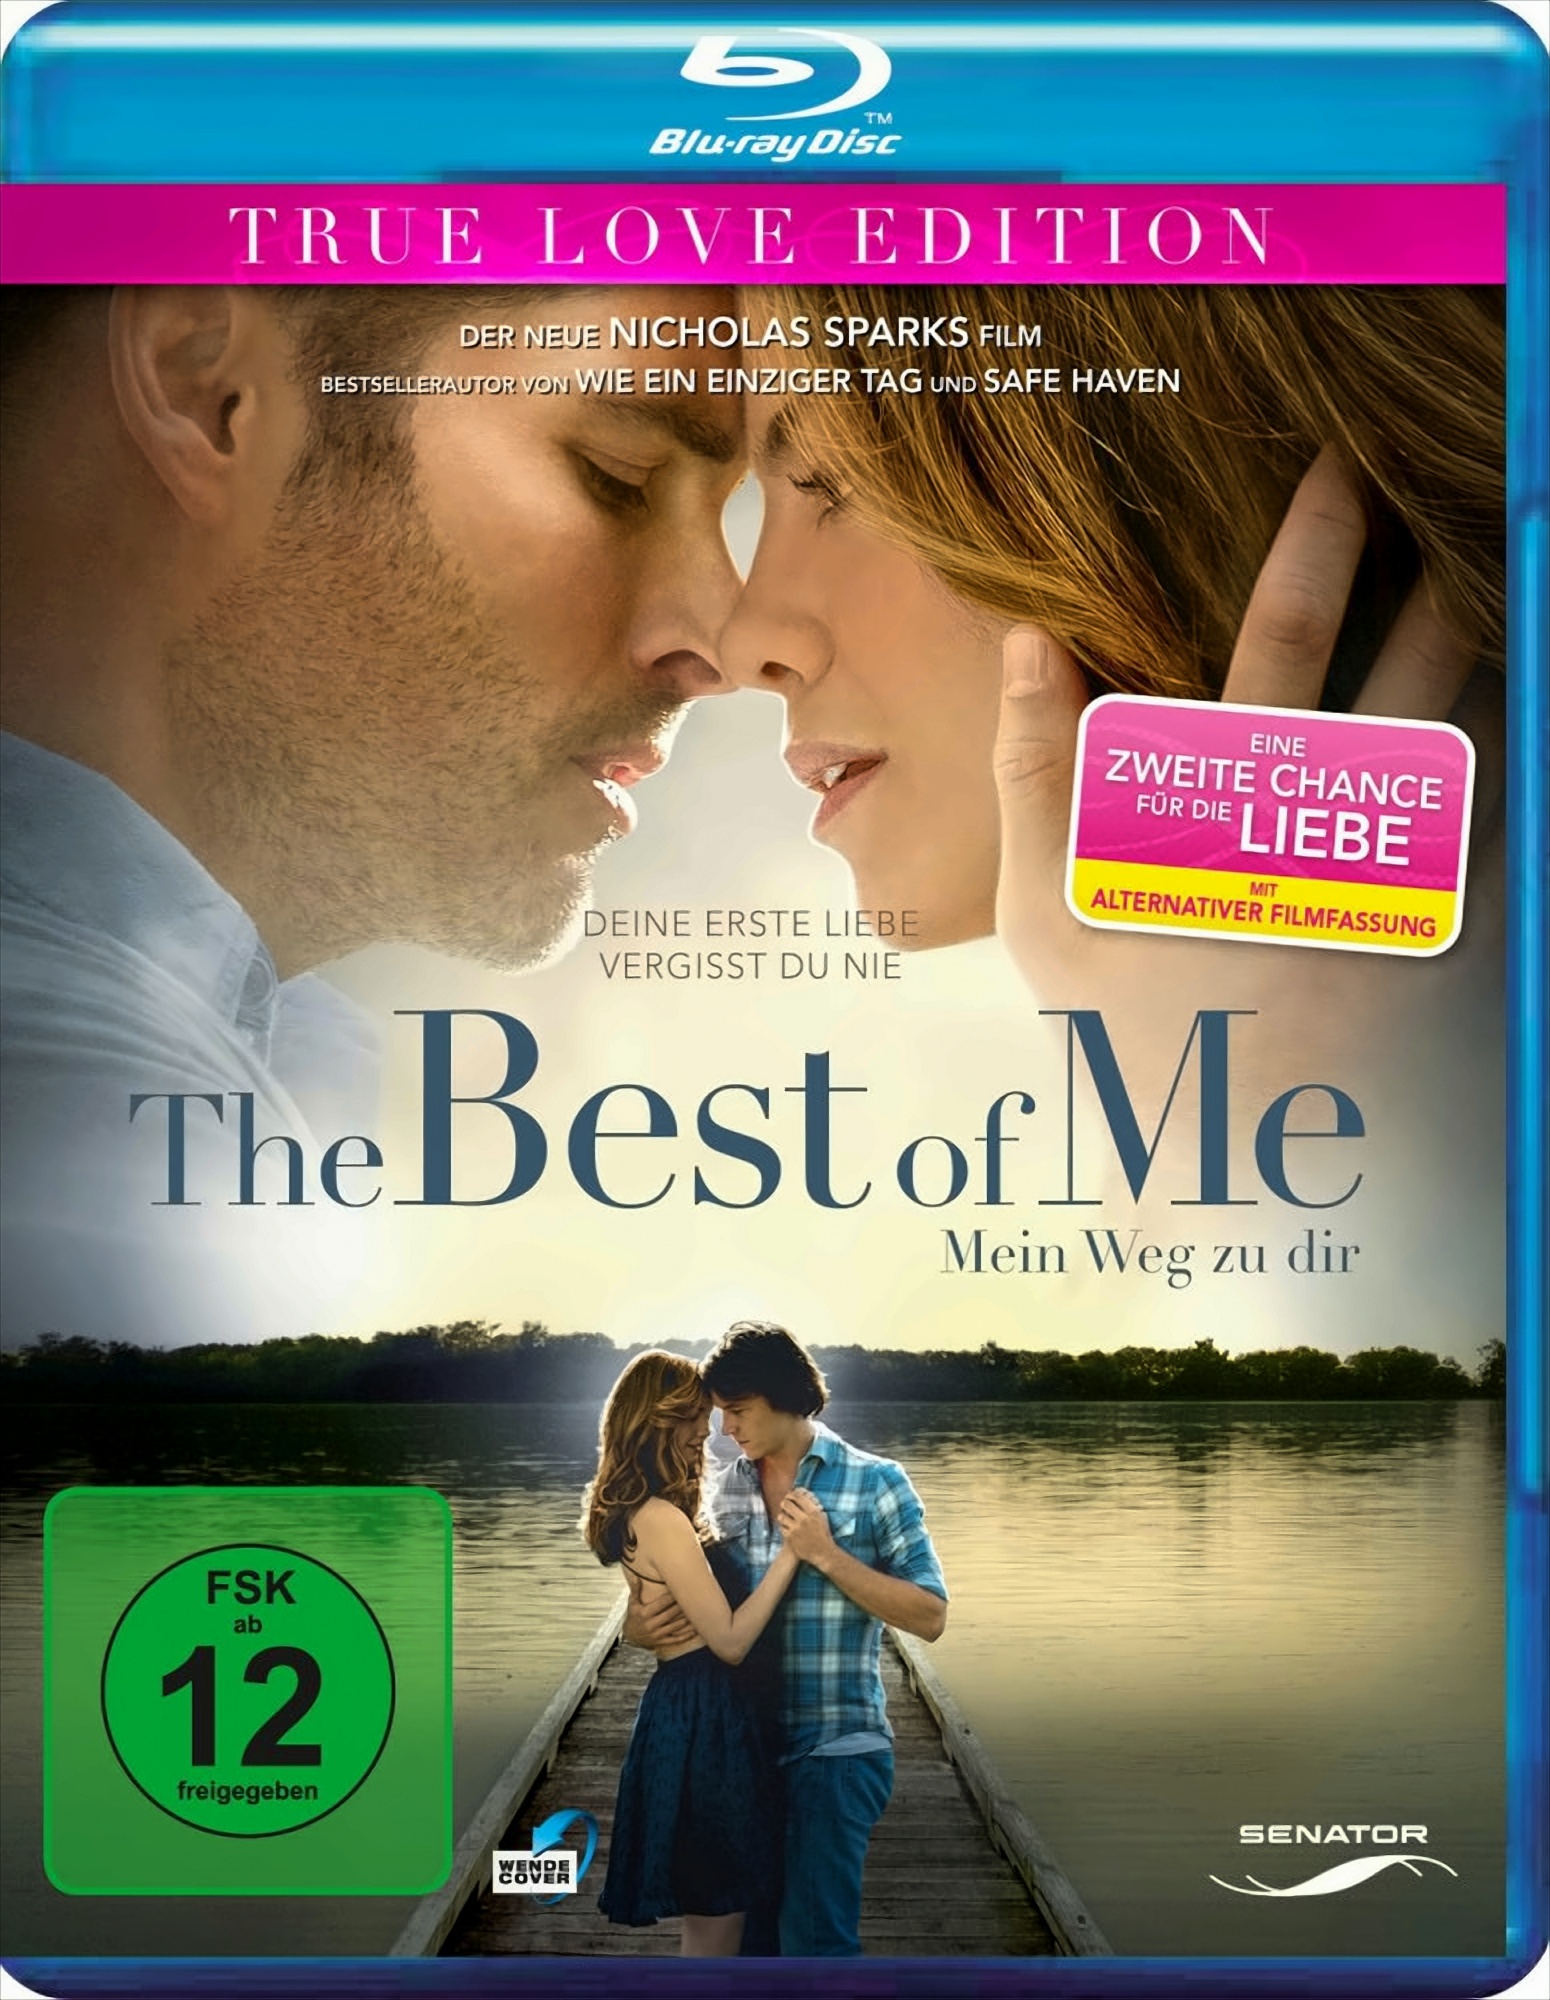 The Best of Me - Mein Weg zu dir von Universum Film